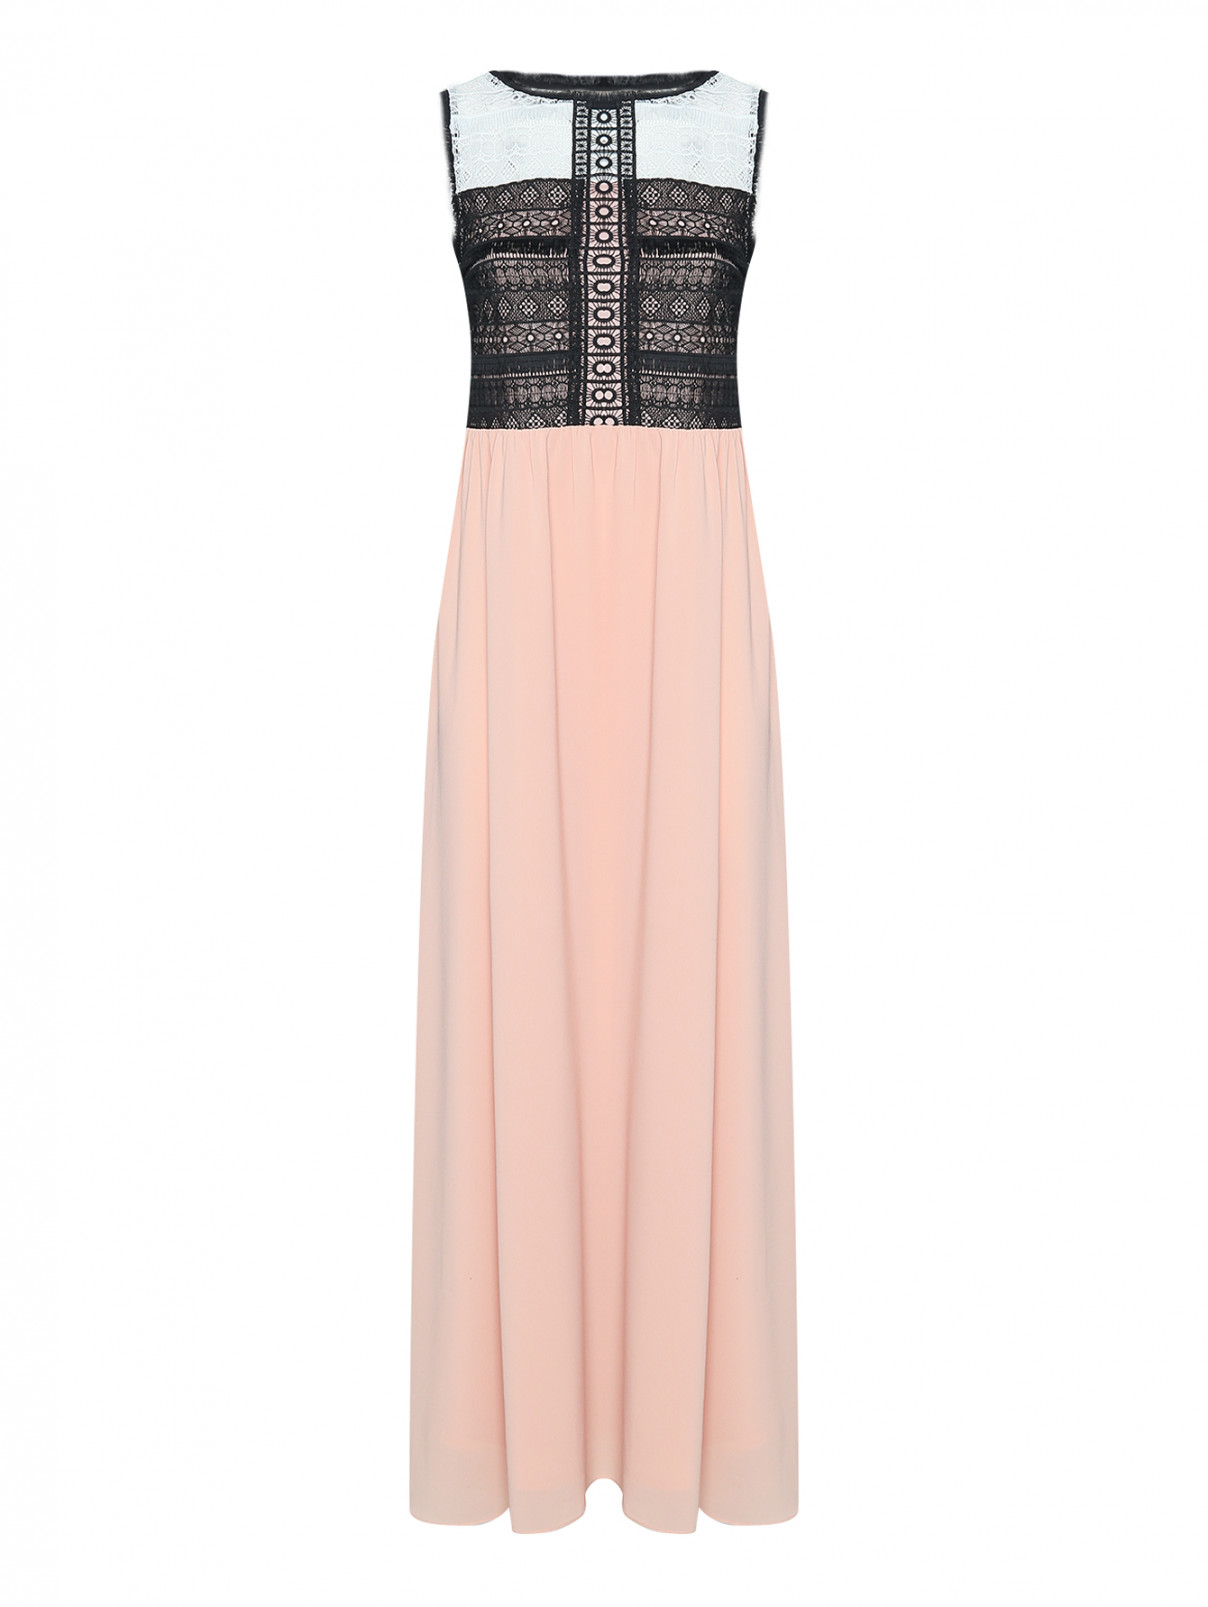 Платье-макси с декоративной вышивкой PennyBlack  –  Общий вид  – Цвет:  Розовый